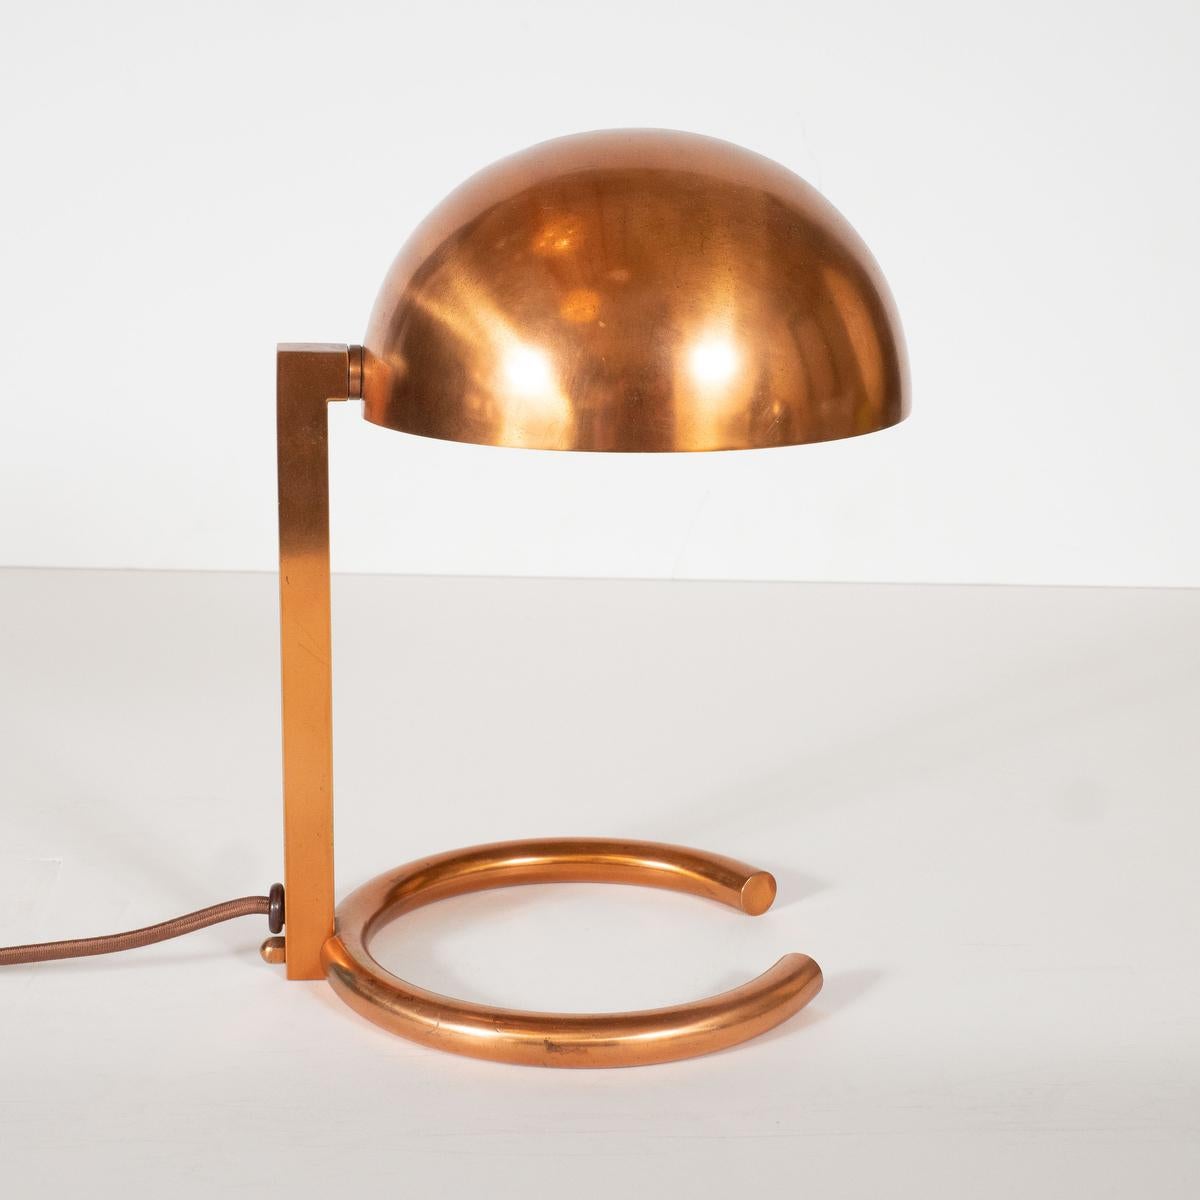 Rare lampe de bureau diminutive en cuivre de style moderniste avec abat-jour ajustable par Adnet.